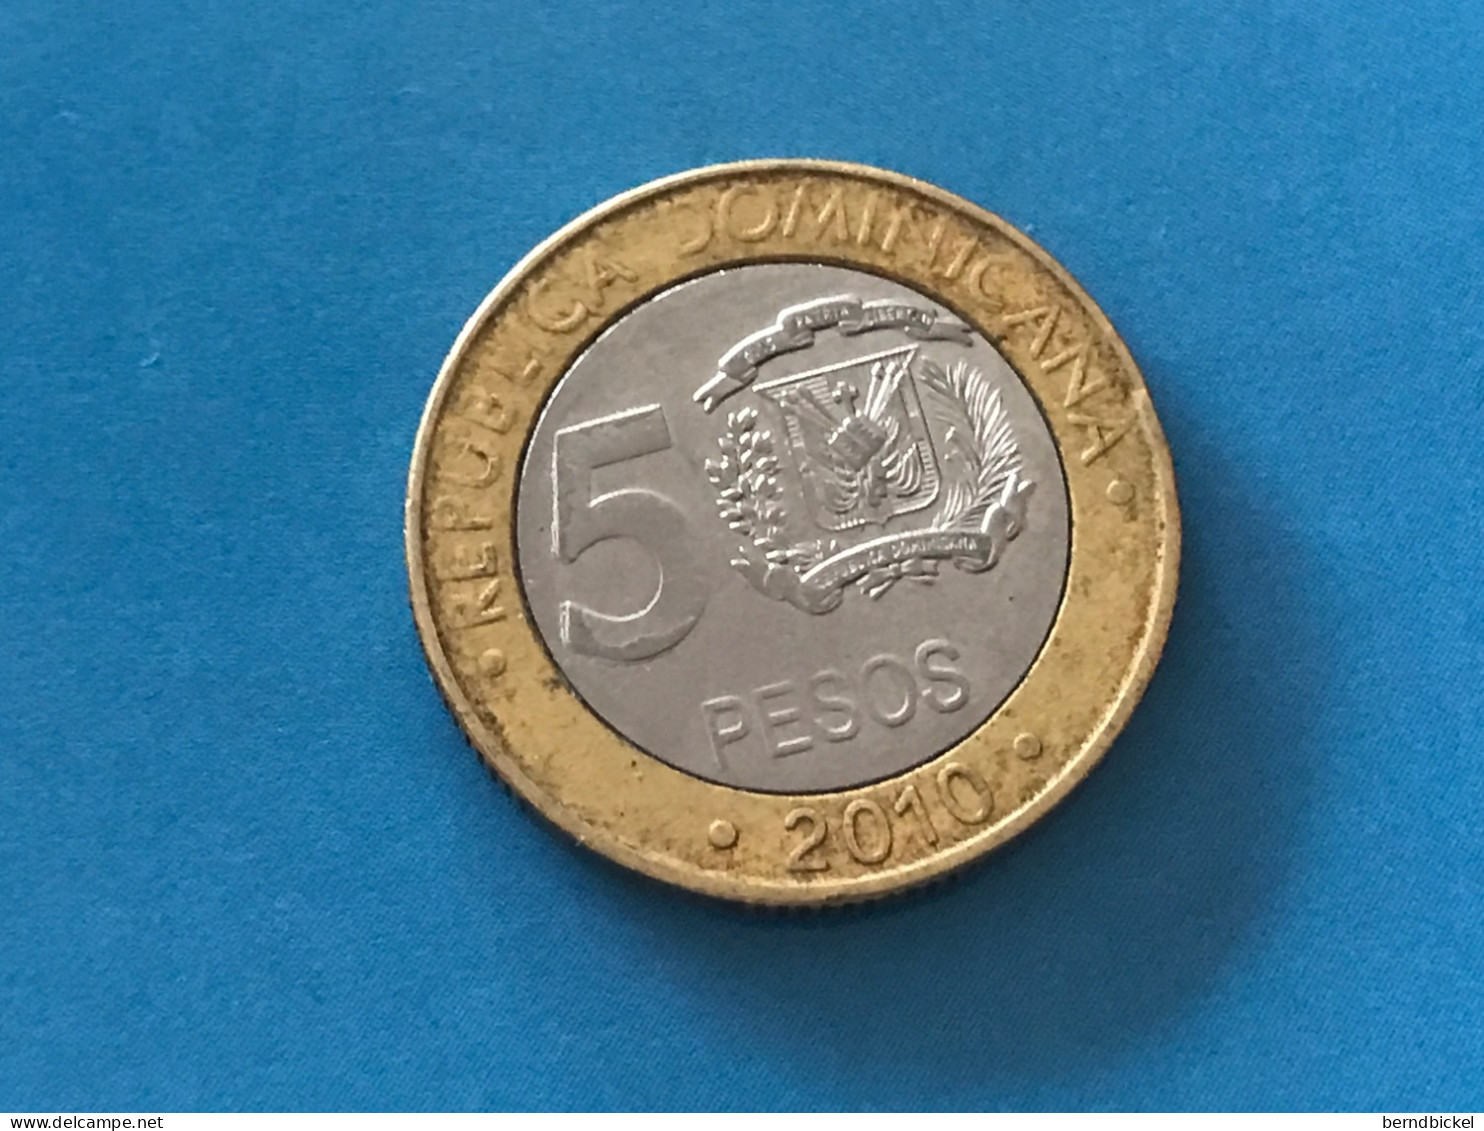 Münze Münzen Umlaufmünze Dominikanische Republik 5 Pesos 2010 - Dominikanische Rep.